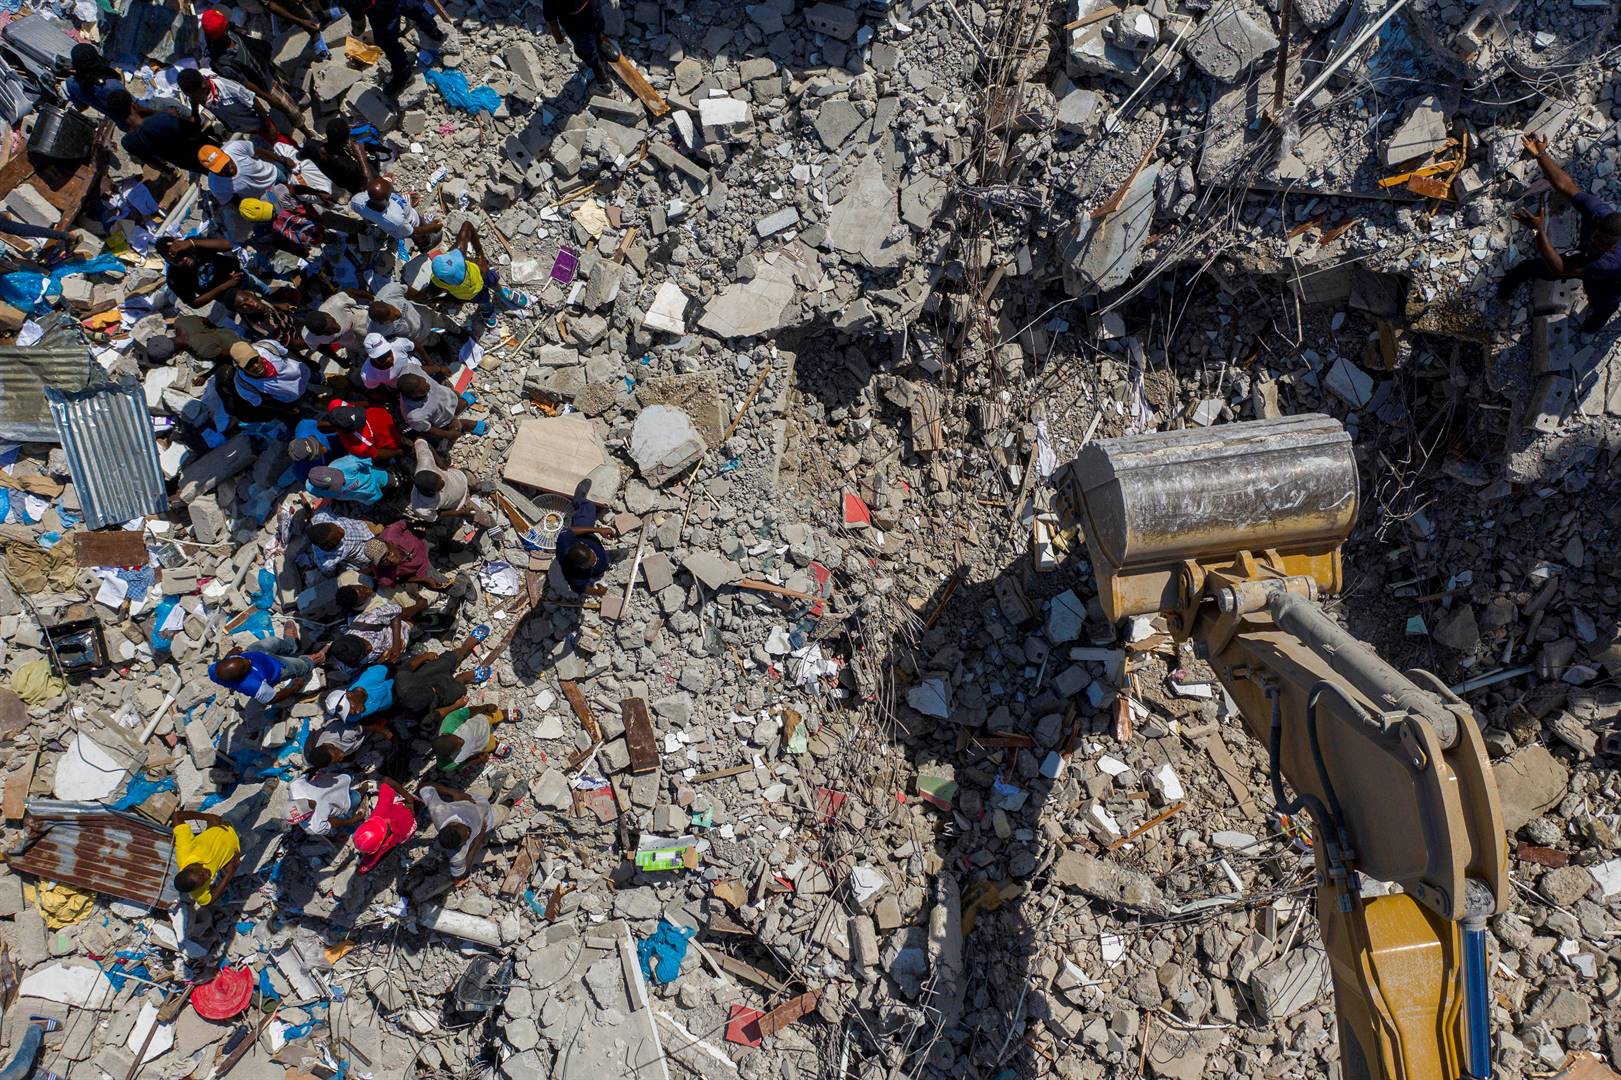 Mense drom saam en kyk na die skade wat aan die kusdorp Les Cayes in Haïti aangerig is. Foto: Reuters